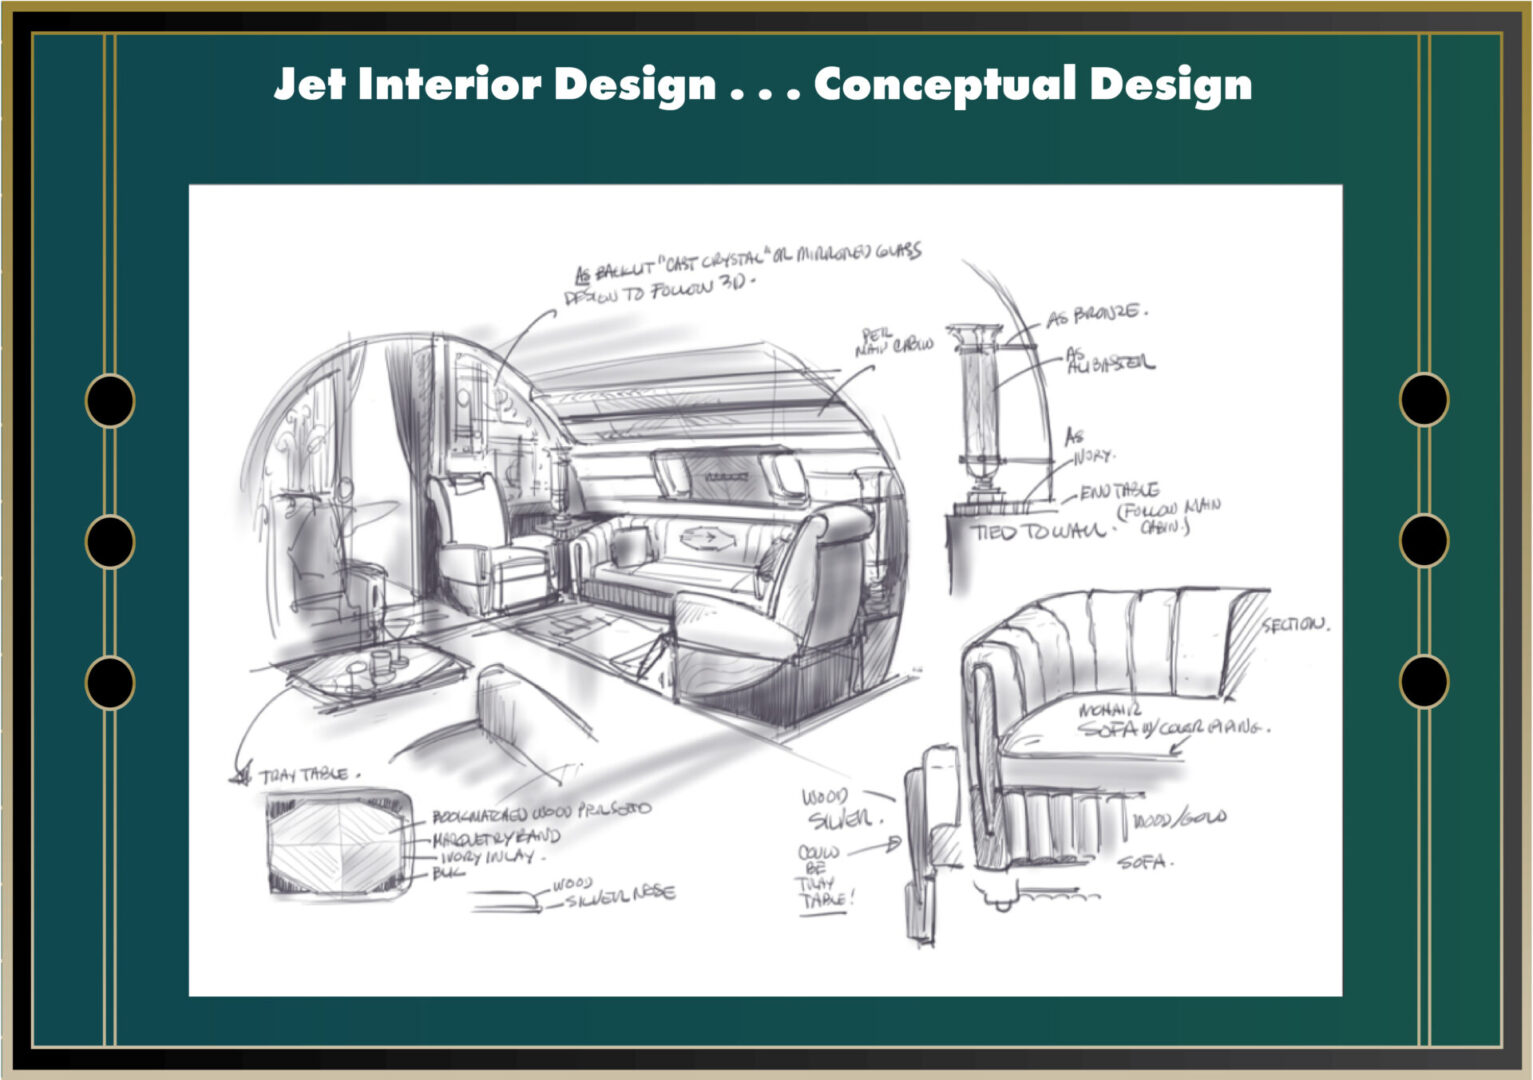 Jet Interior Design using Conceptual Design